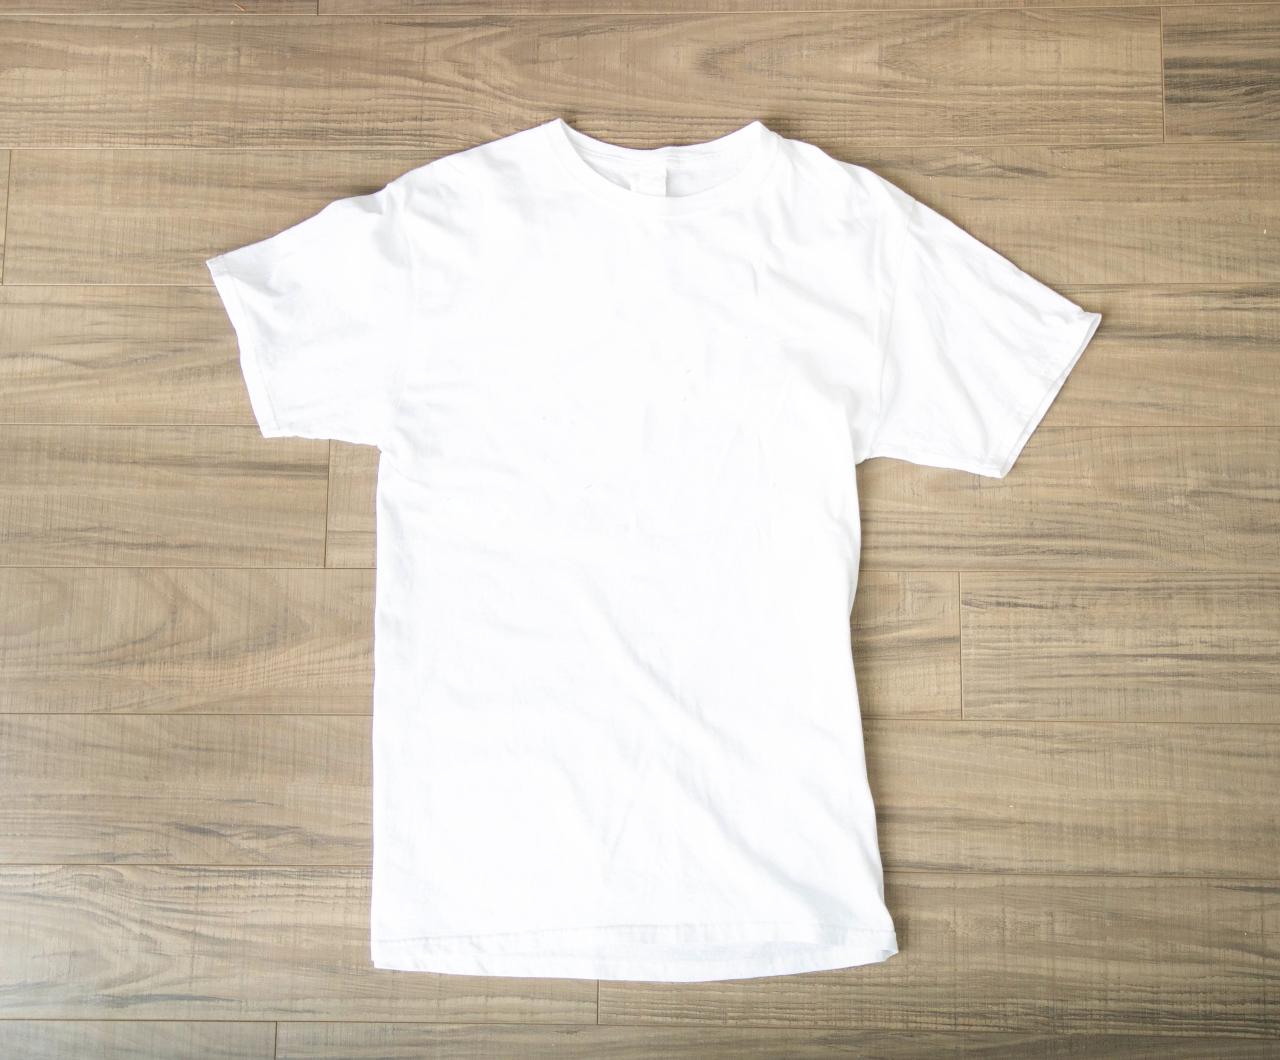 White T Shirt Mock